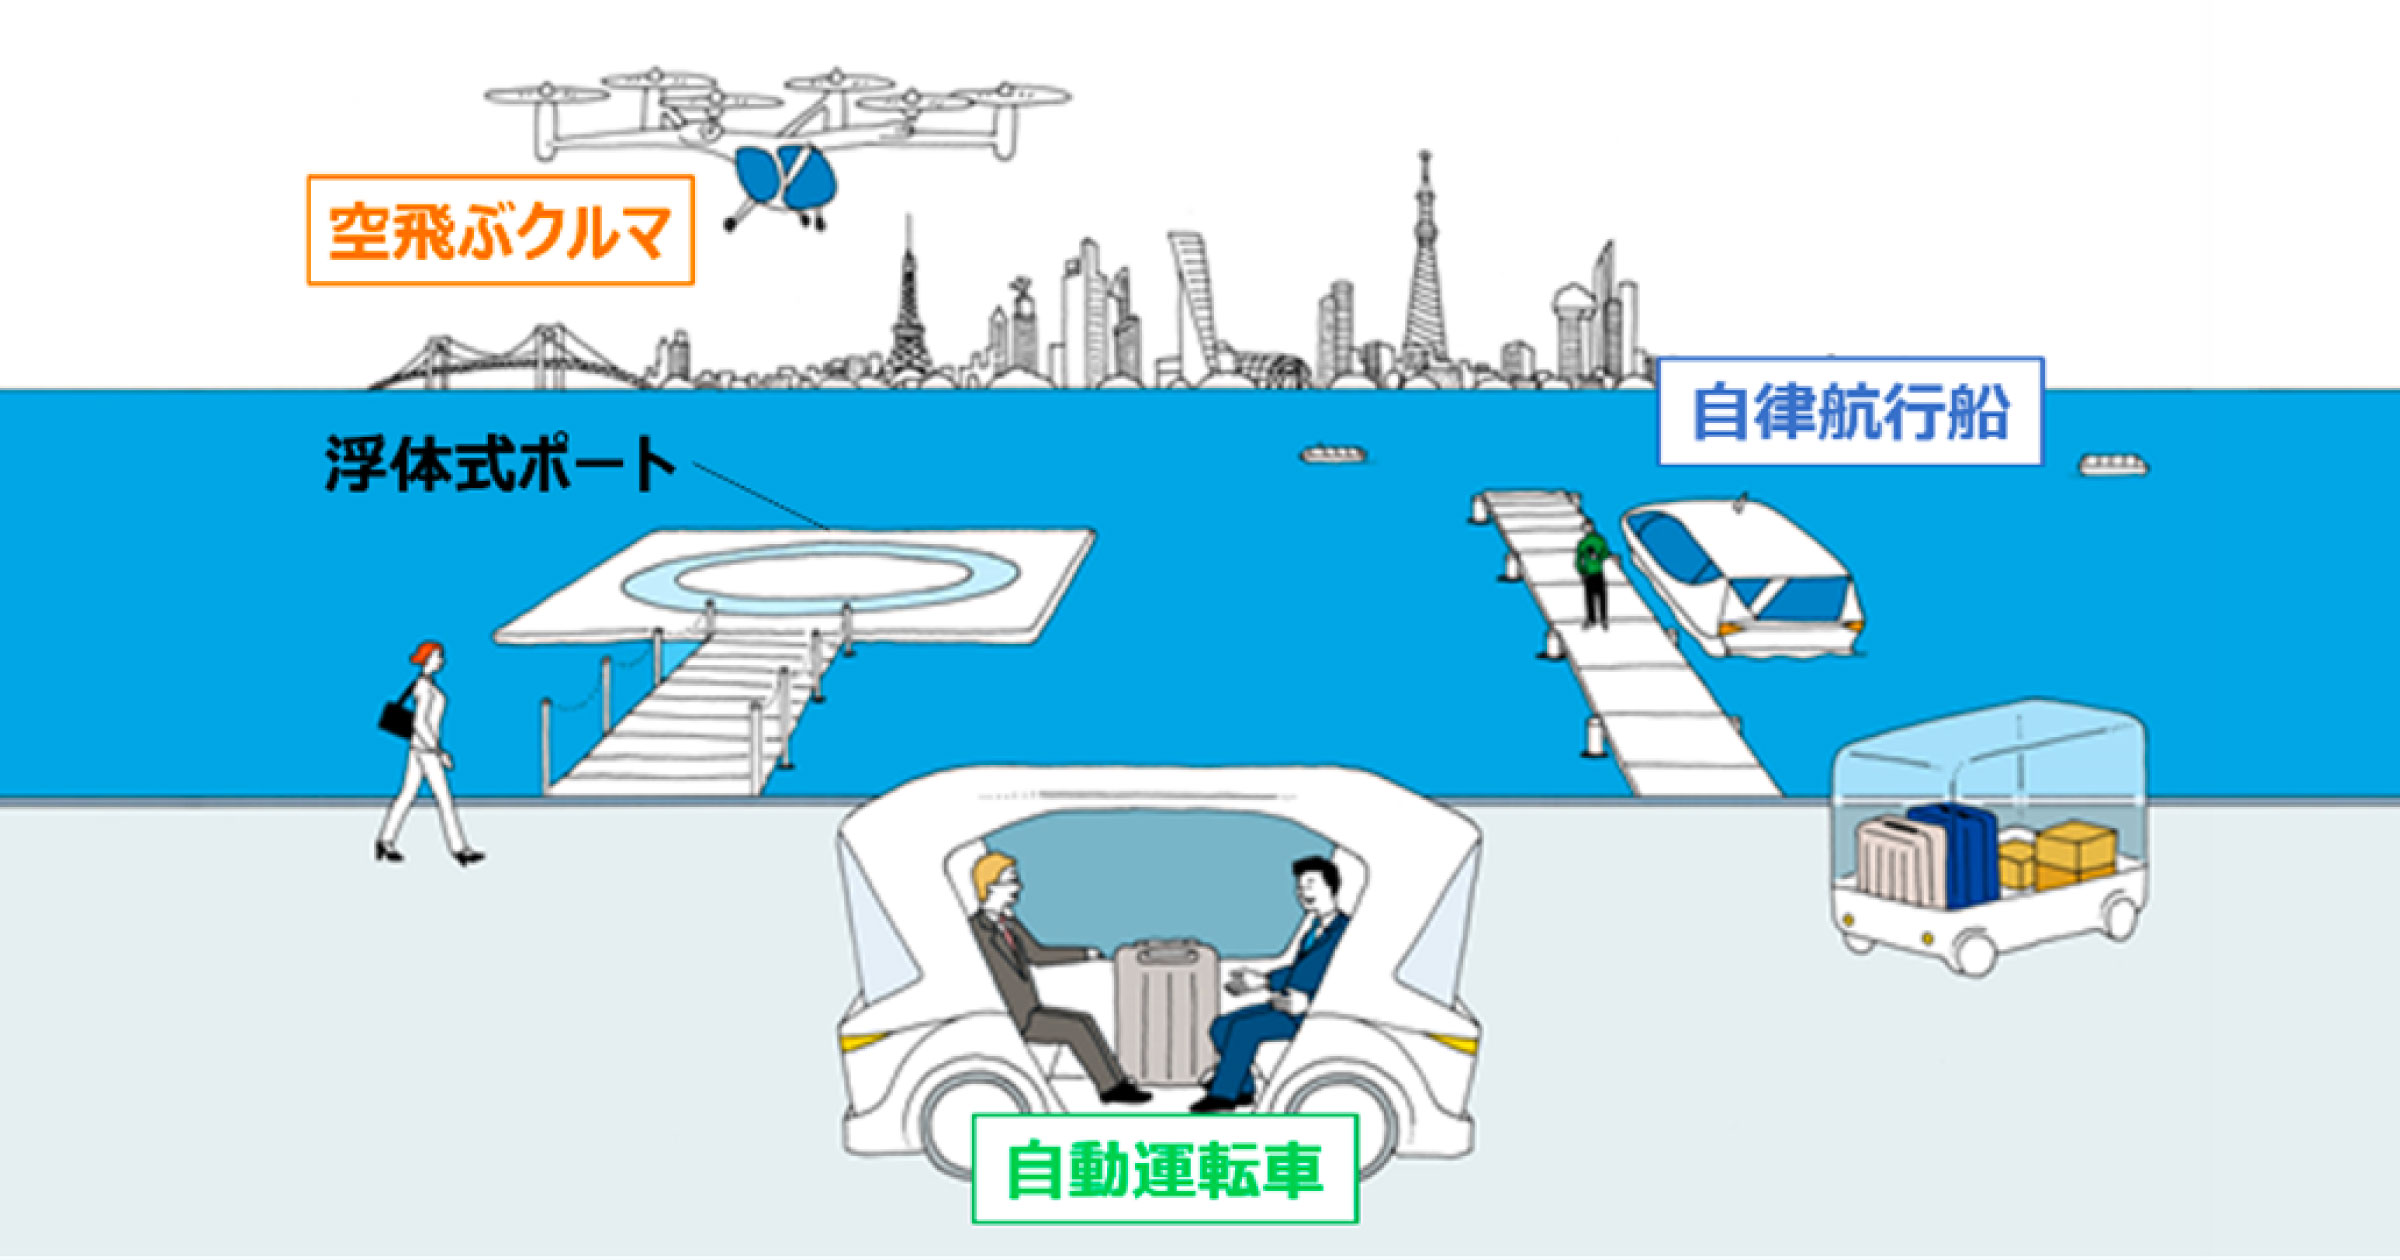 「陸海空」の次世代モビリティ、東京ベイエリアで相互連携へ